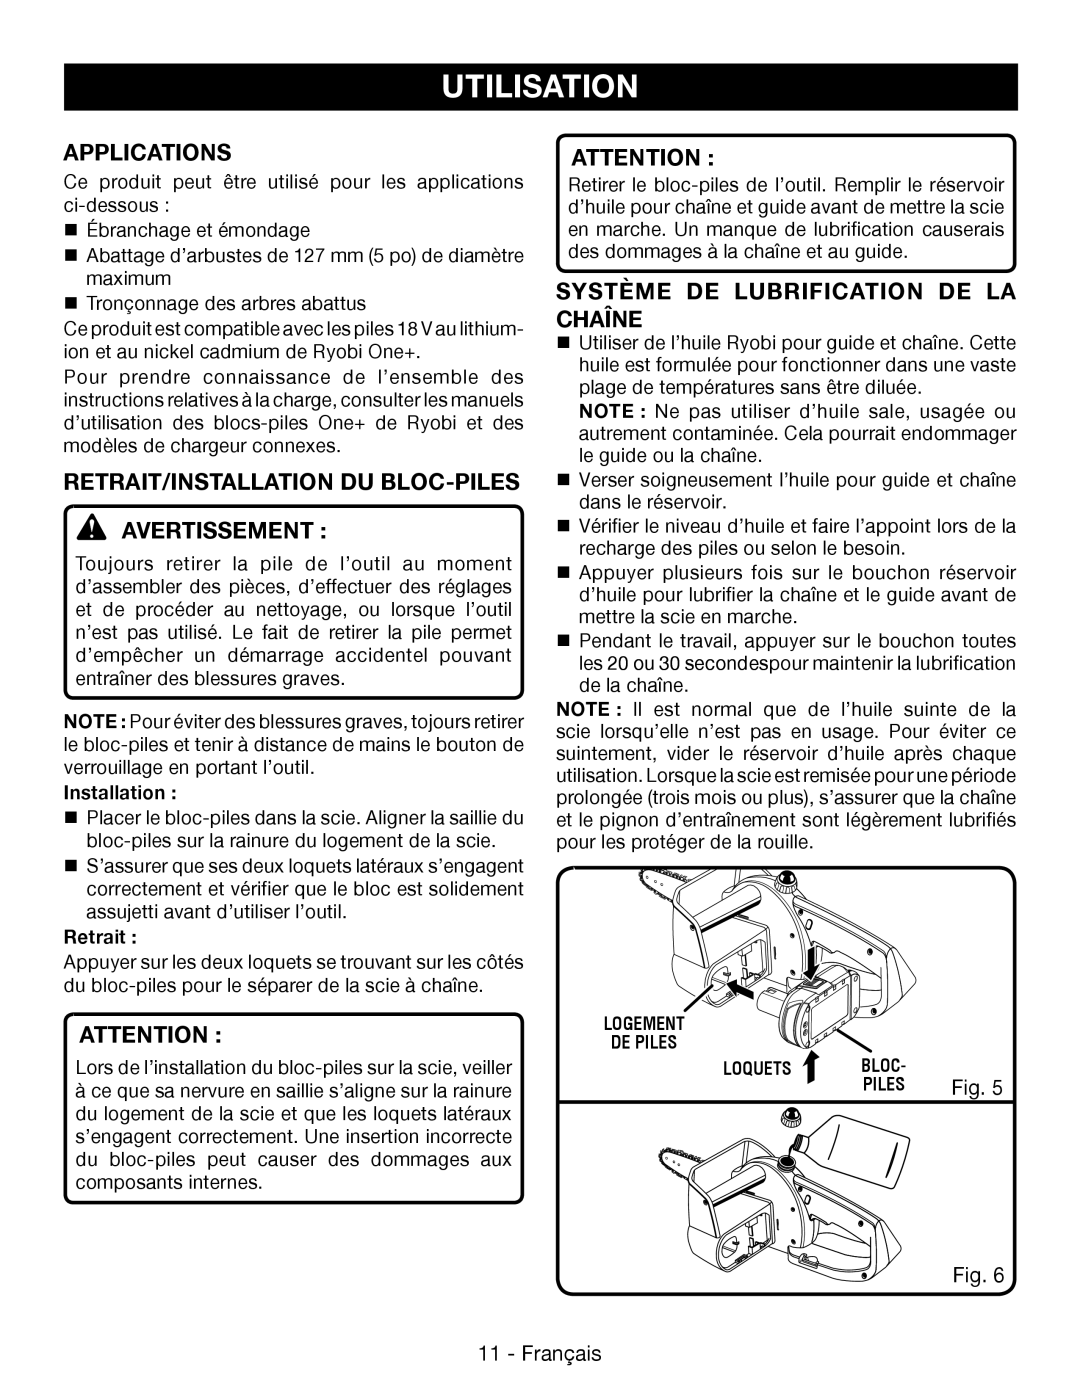 Ryobi P545 Applications, Retrait/Installation Du Bloc-Piles Avertissement, Système De Lubrification De La Chaîne, Fig 